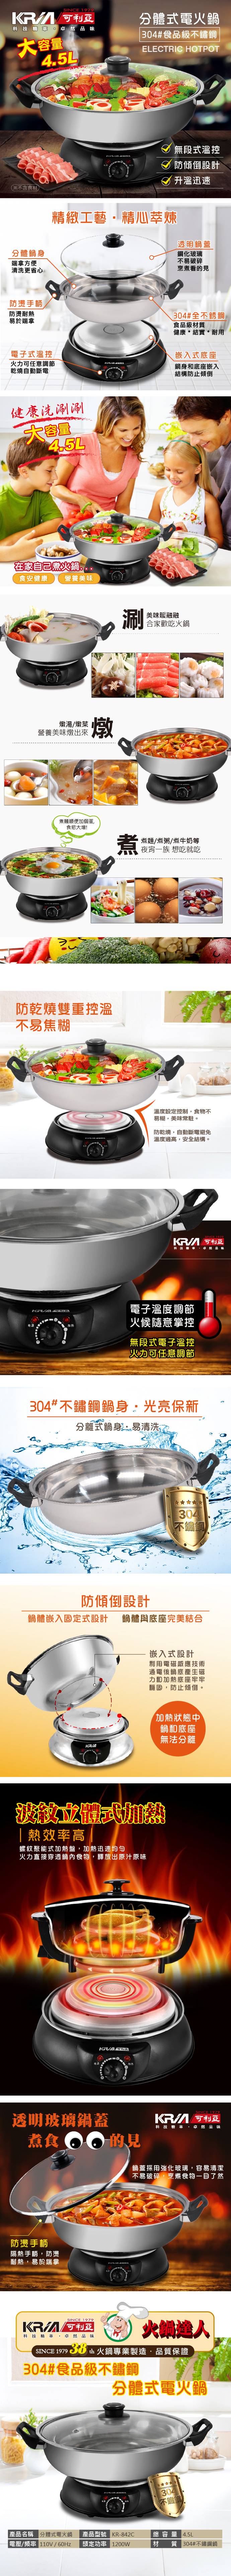 【KRIA 可利亞】4.5公升分體式圍爐電火鍋鍋/料理鍋/調理鍋/燉鍋(KR-8